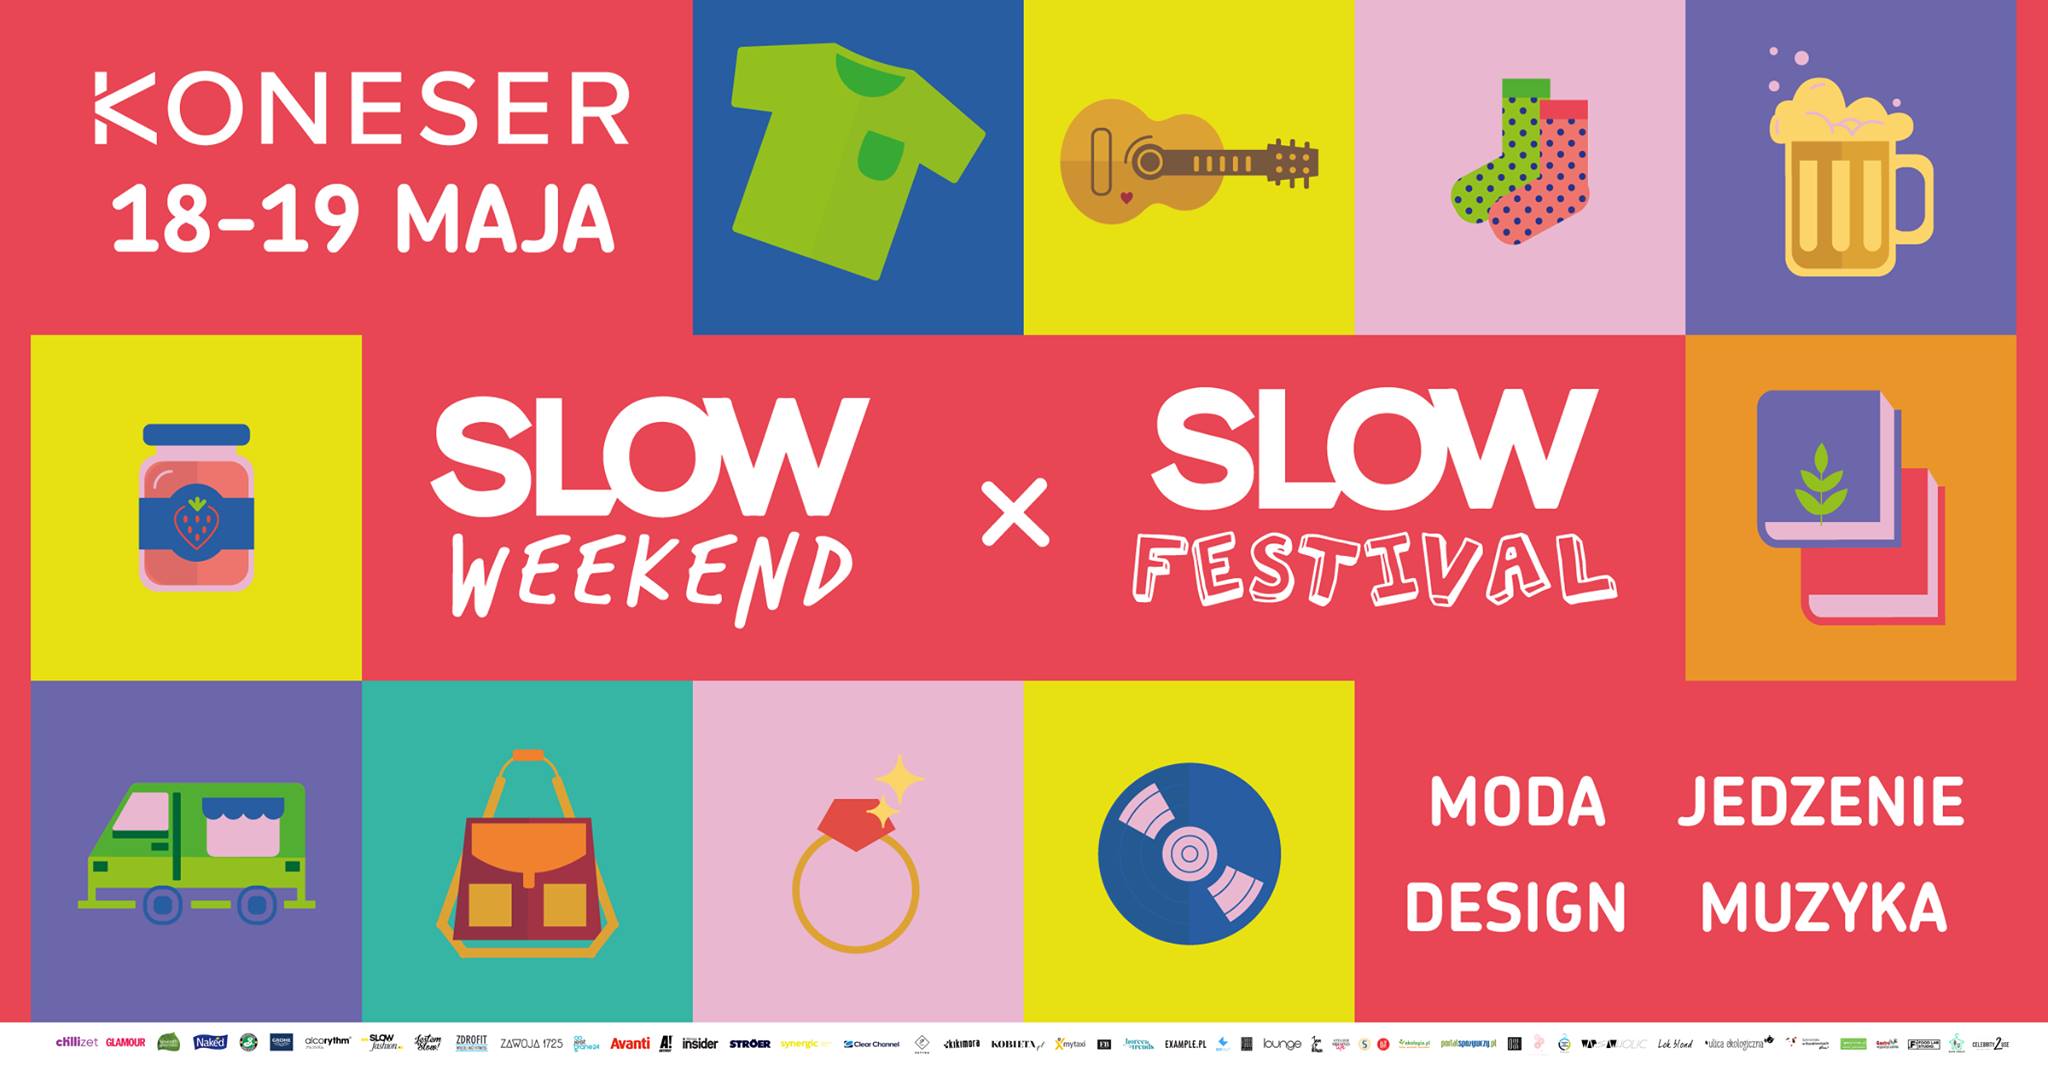 Slow Weekend x Slow Festival